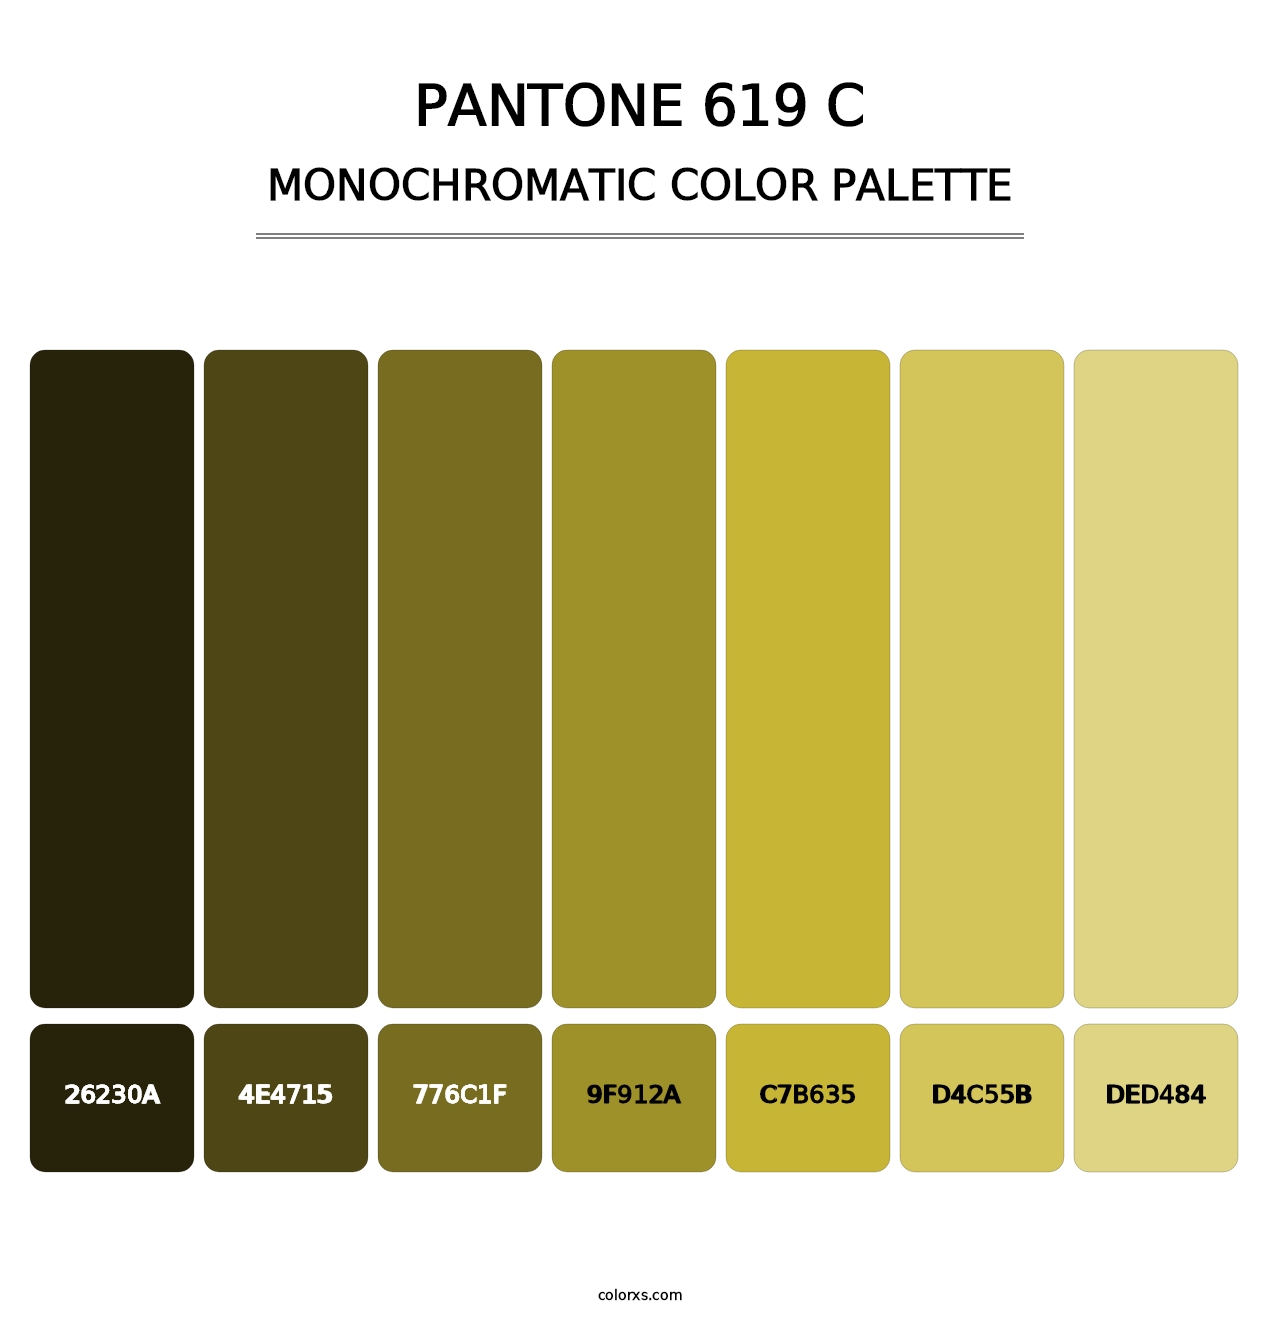 PANTONE 619 C - Monochromatic Color Palette